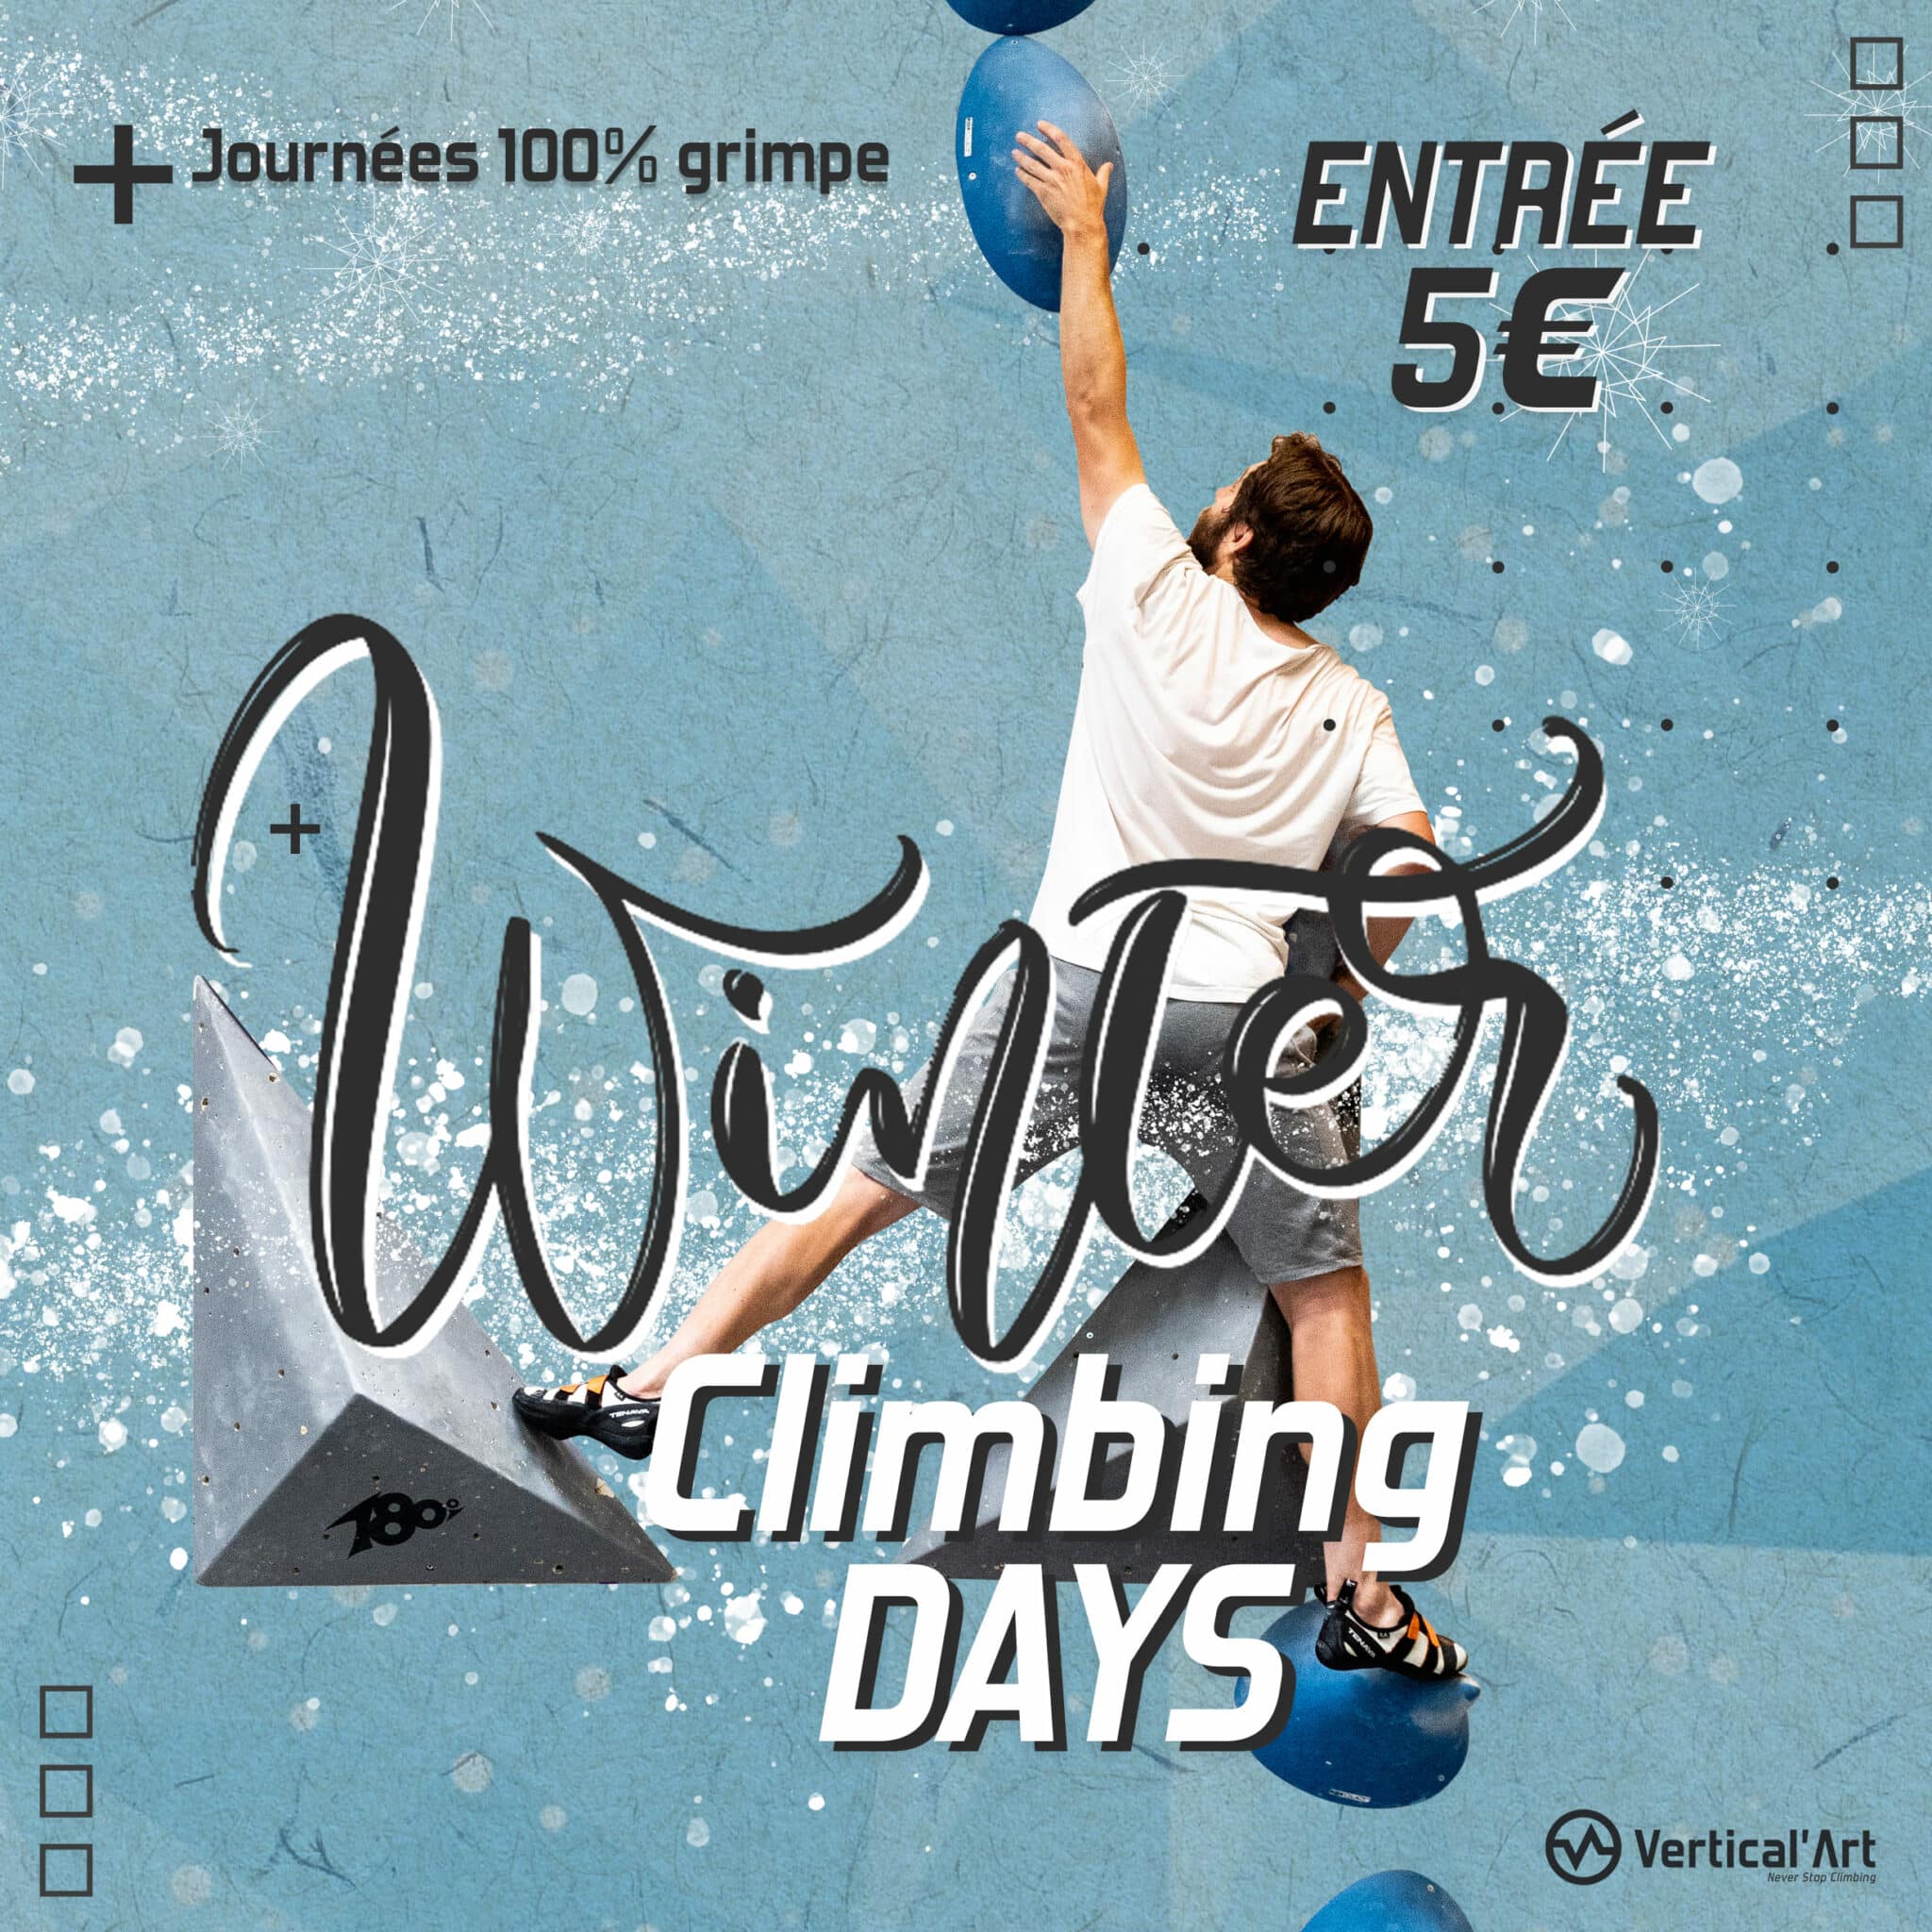 Winter Climbing Days à Vertical’Art Lyon, escalade gratuite pour tous pendant les vacances d'hiver